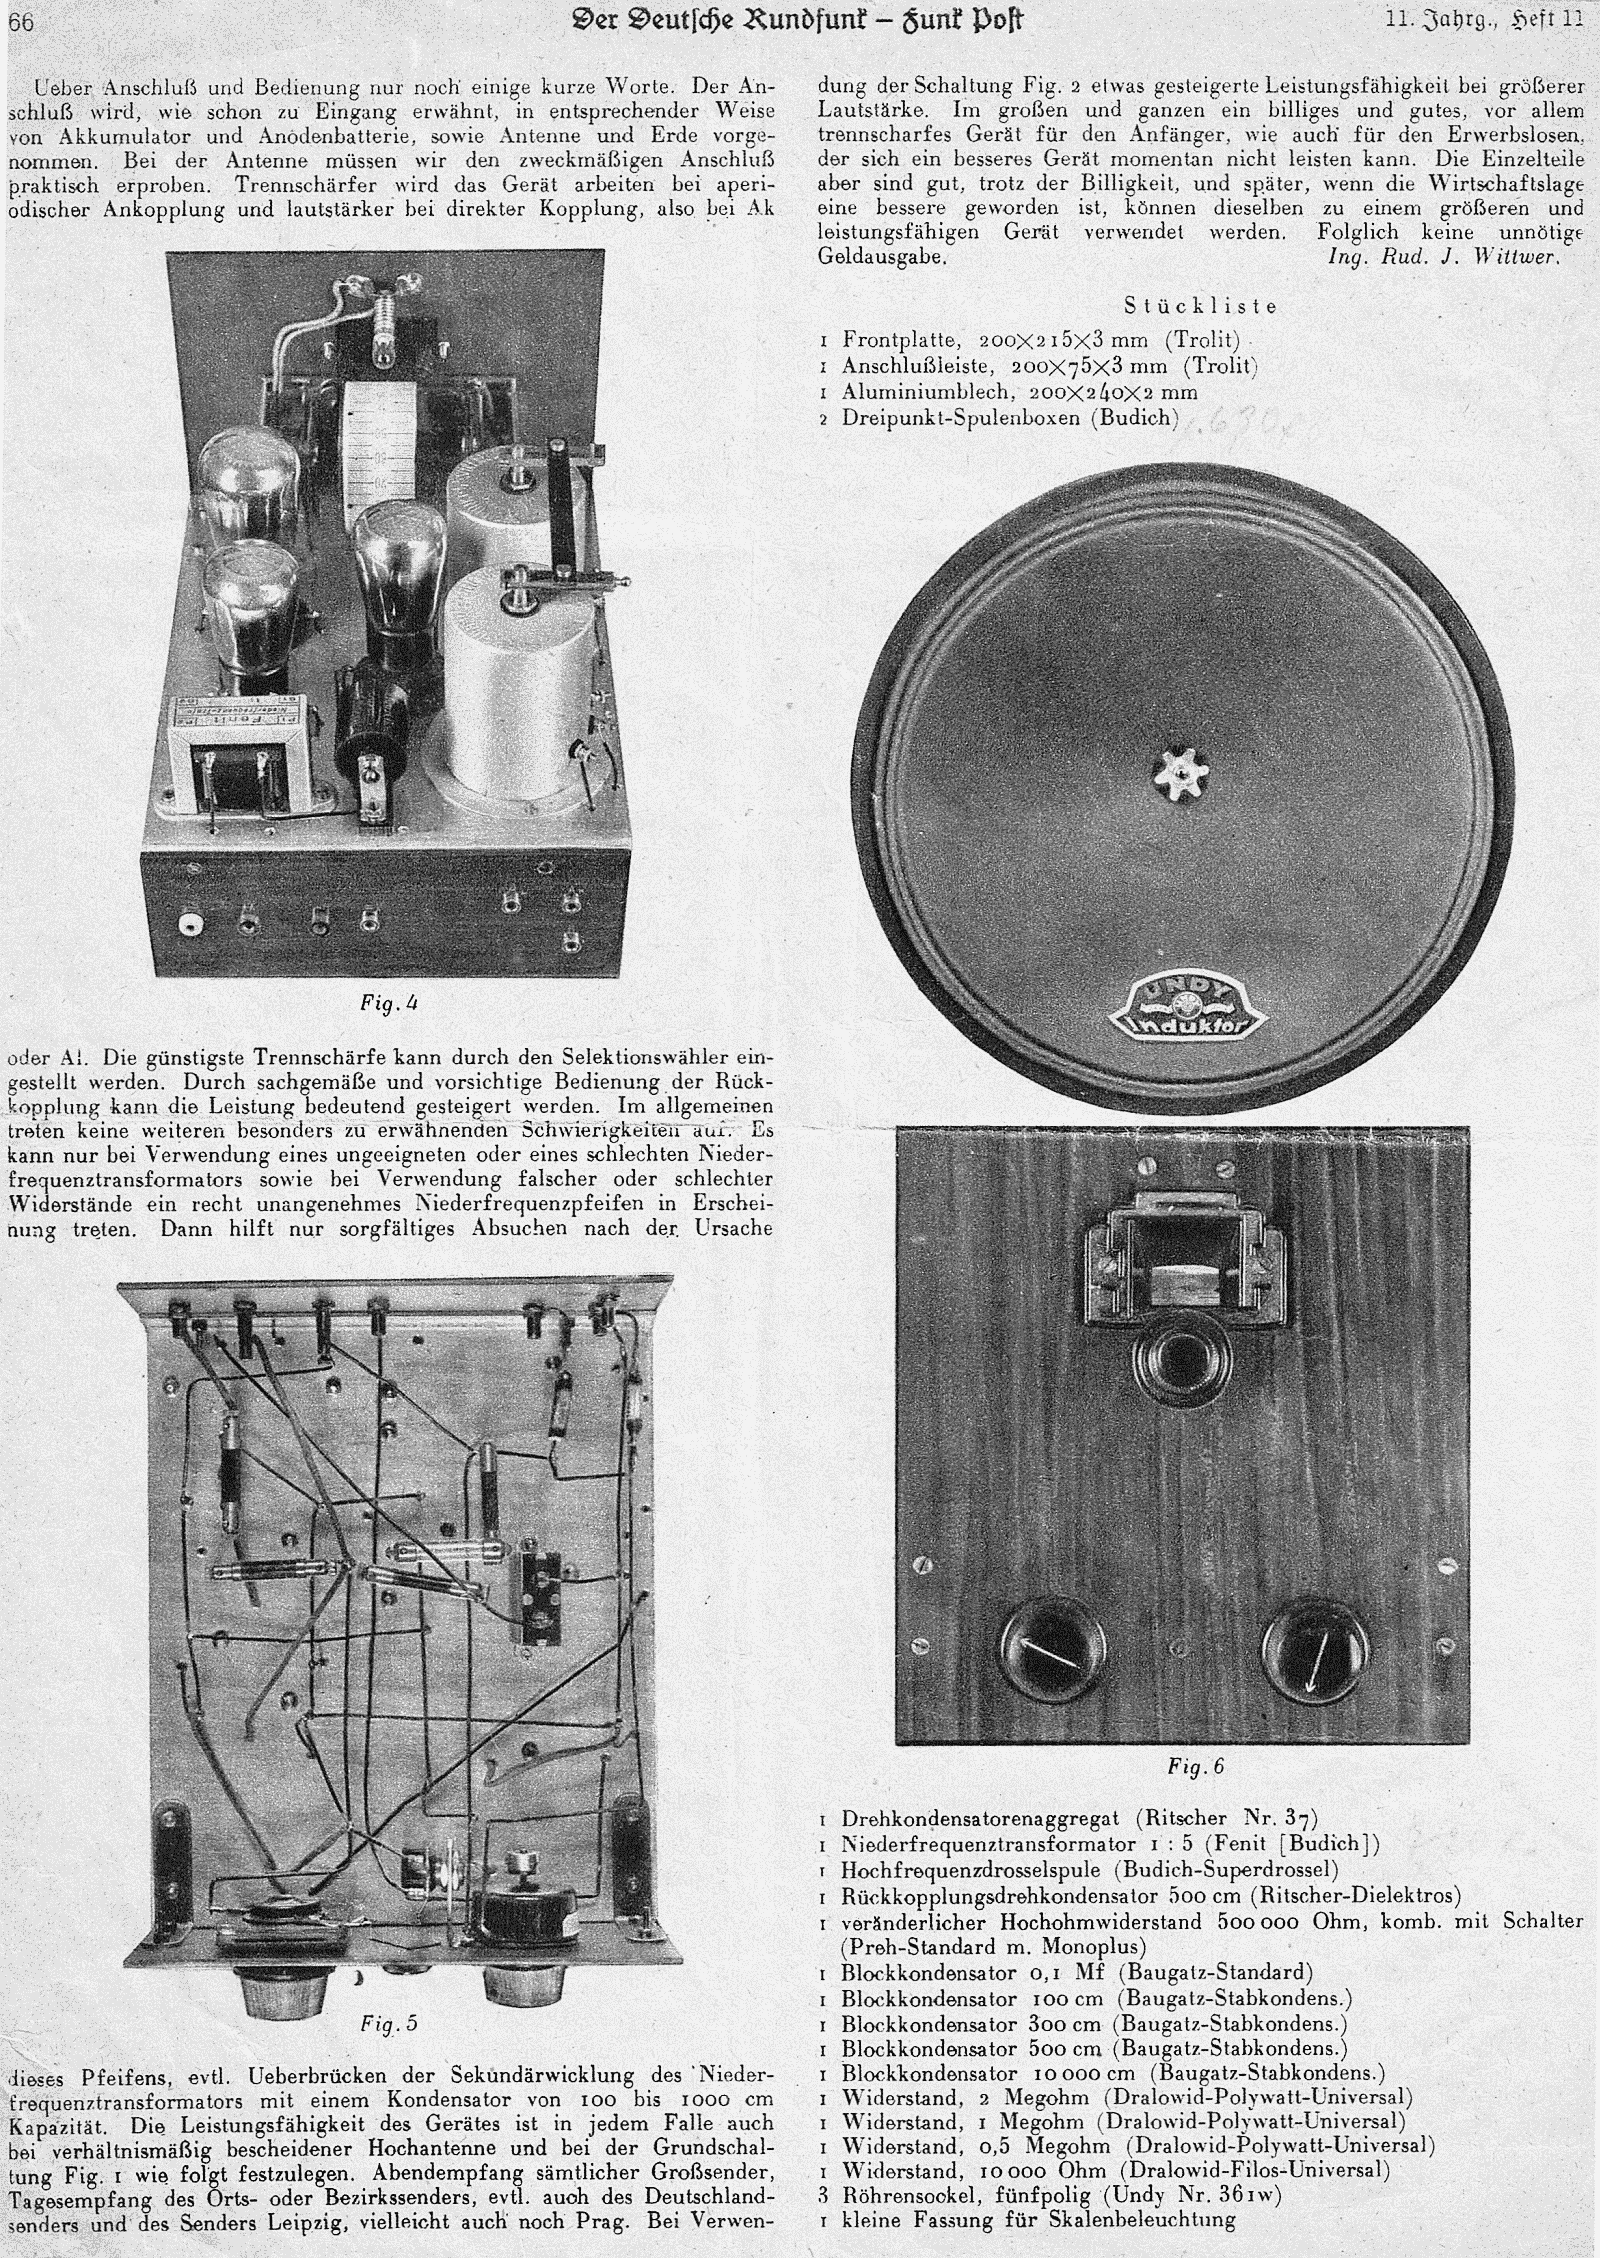 DDR 1933/11, 066